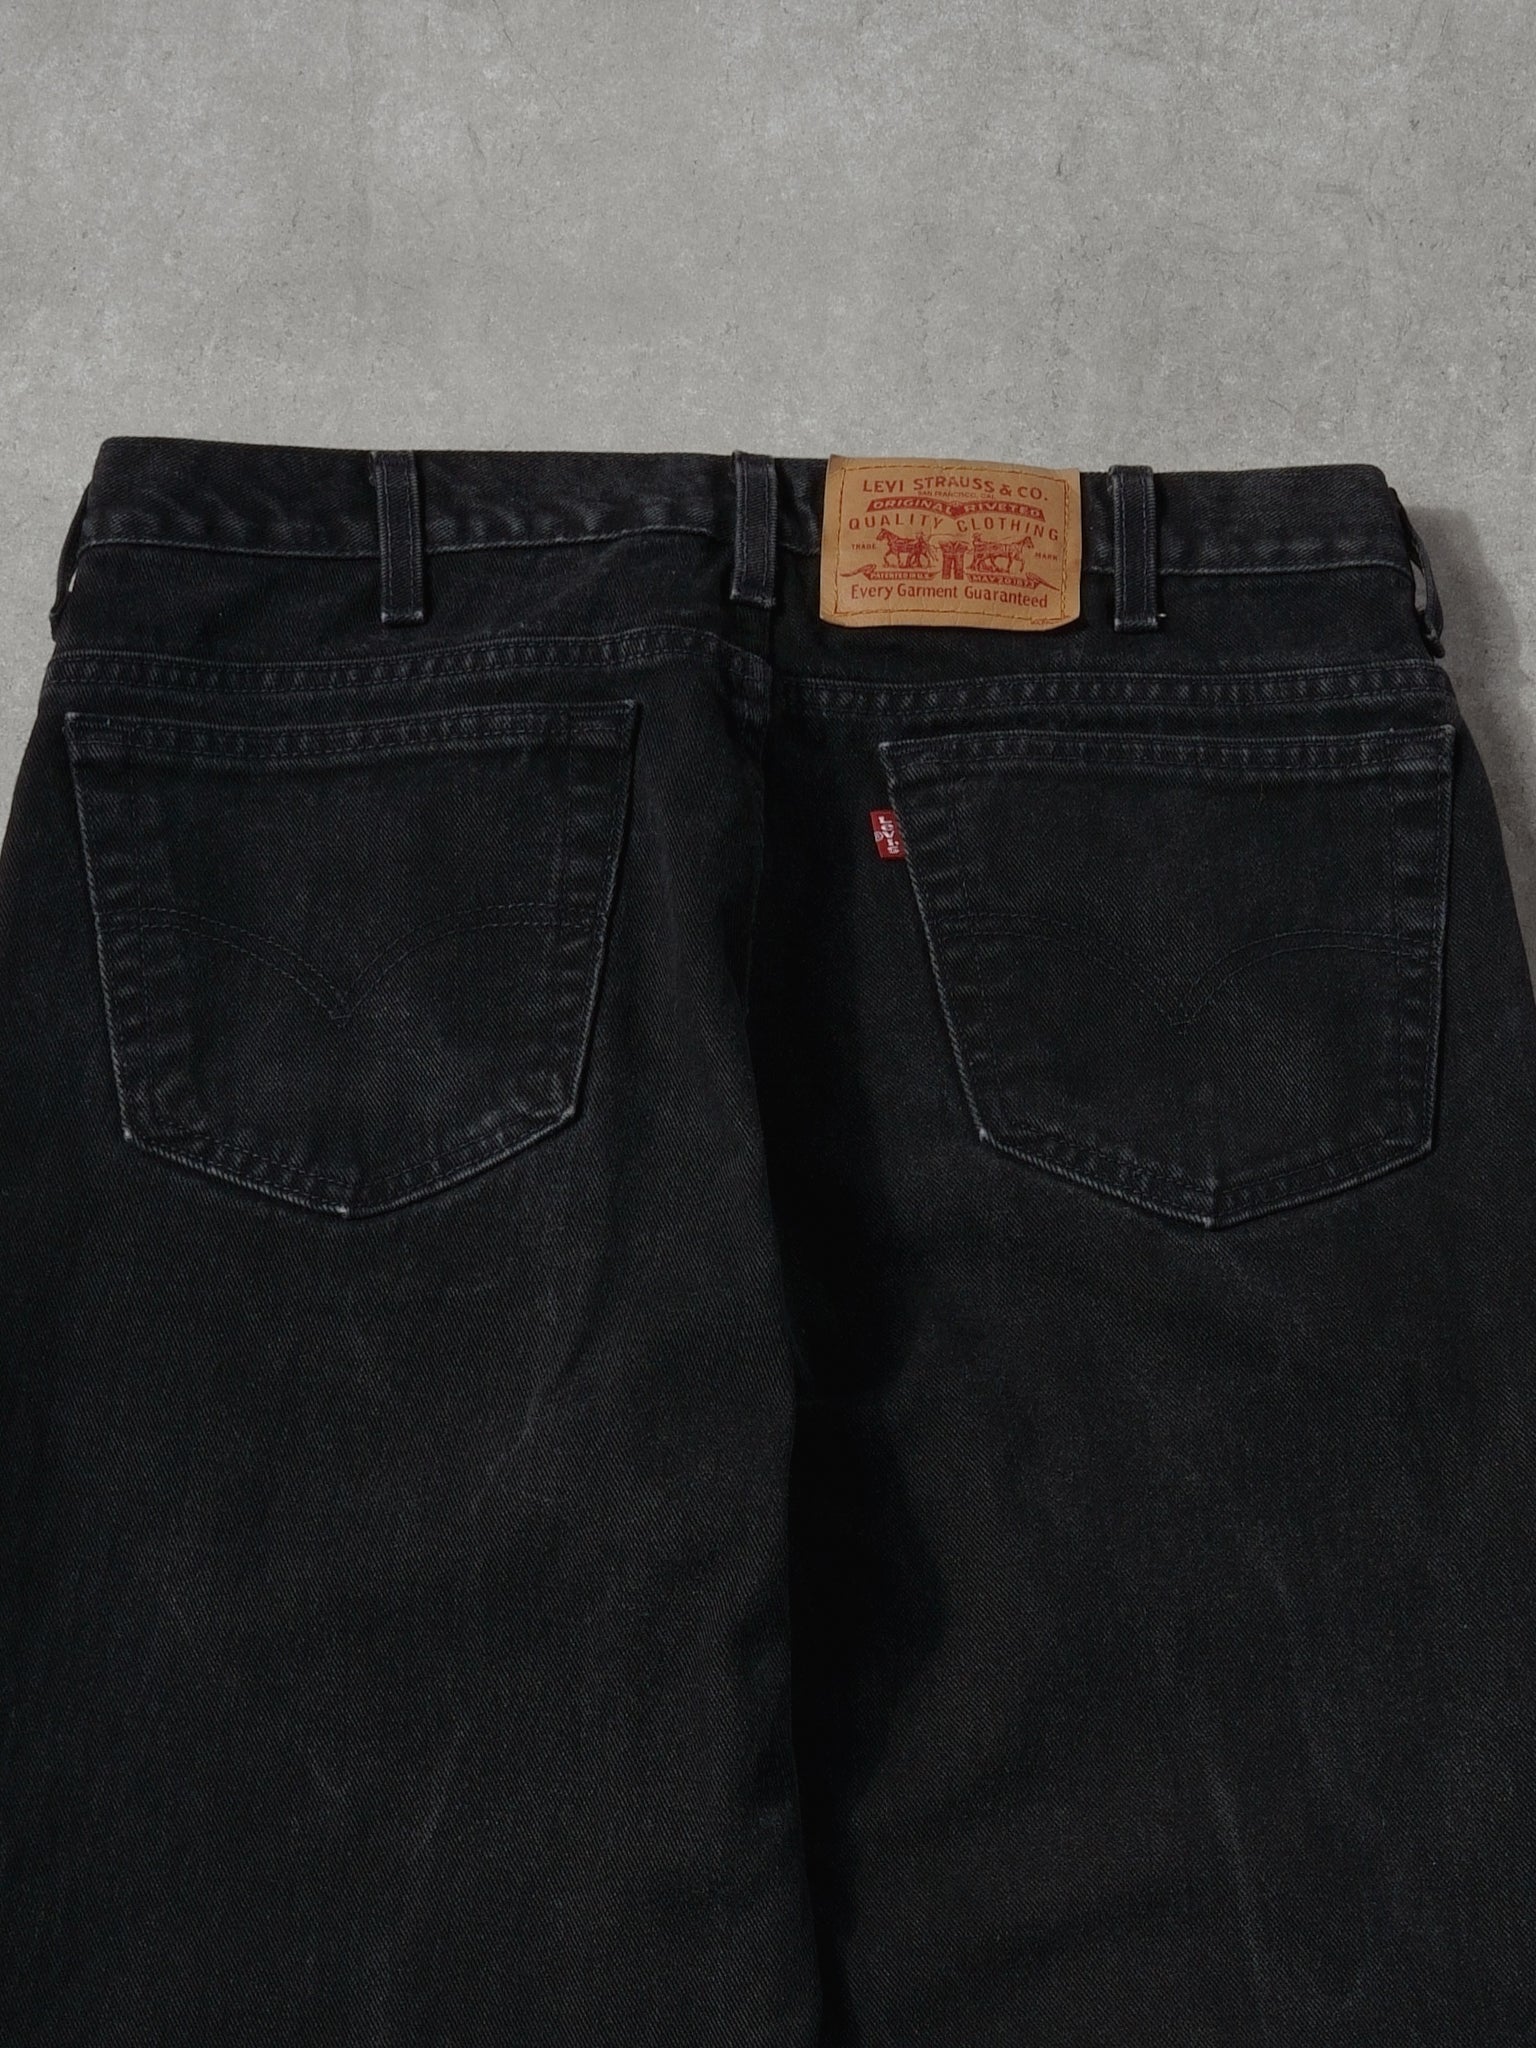 Vintage 90s Black Levi's Denim Jeans (34x28)